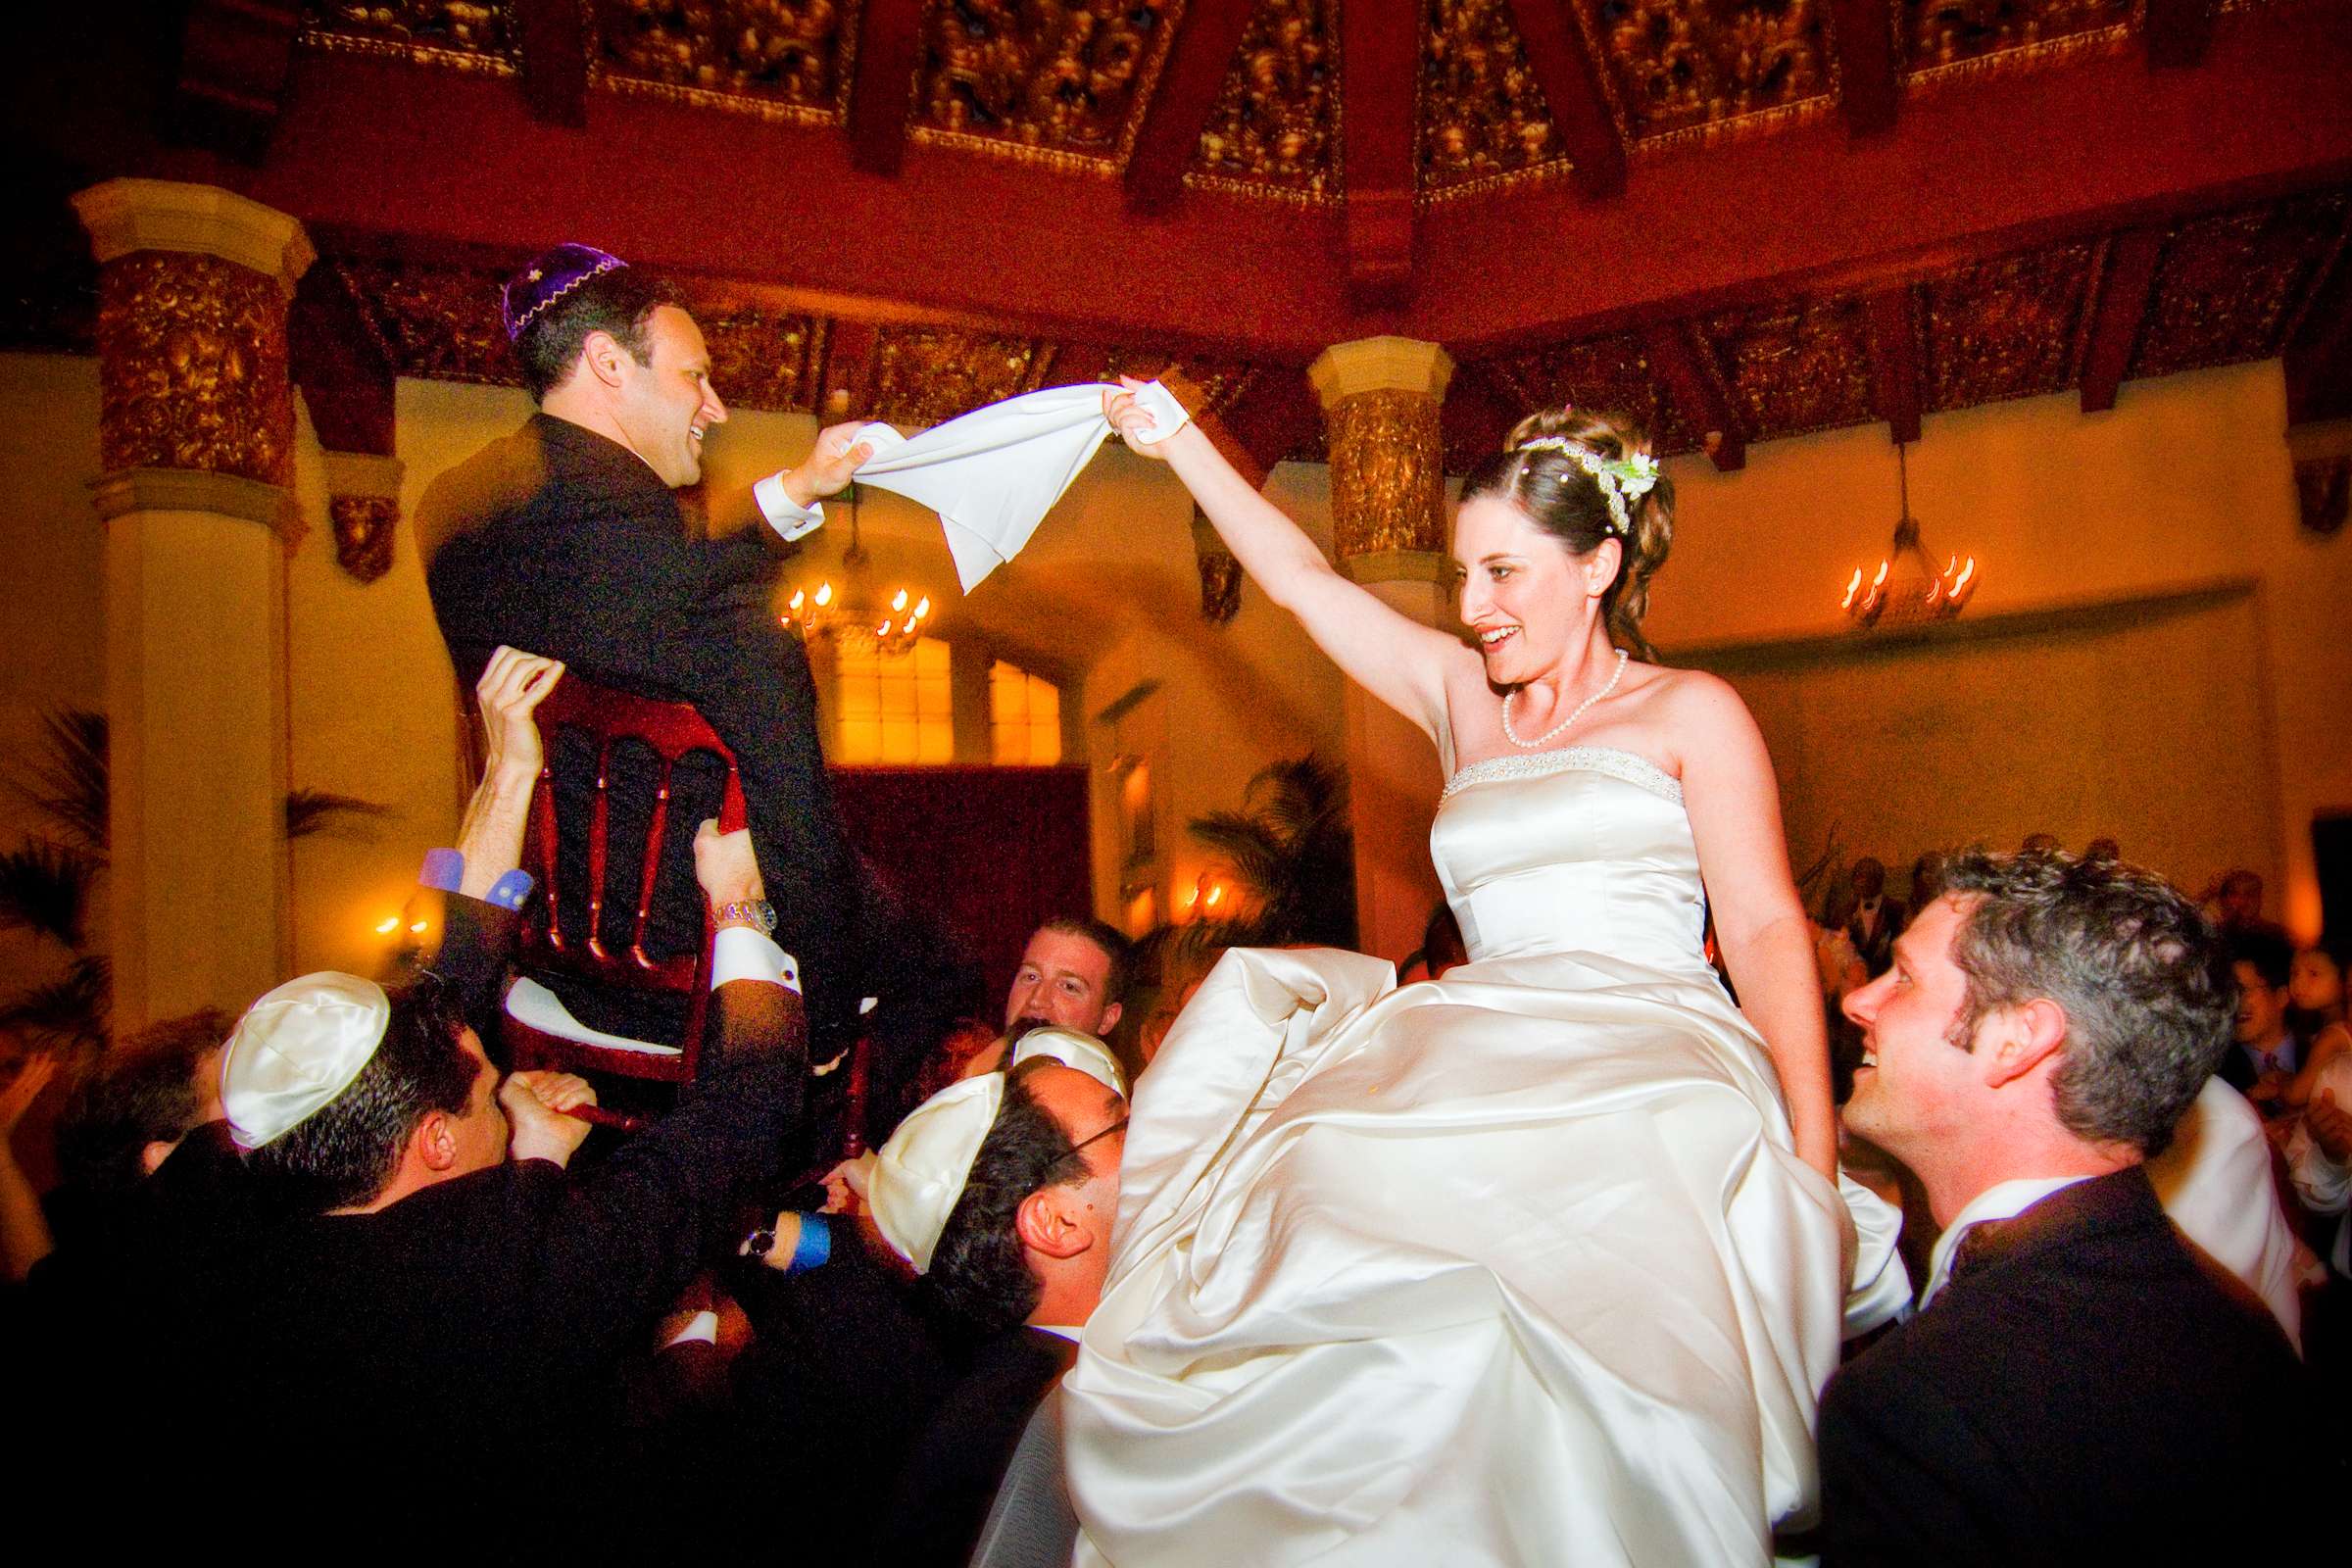 Hora at El Cortez Wedding, Laura and David Wedding Photo #22 by True Photography